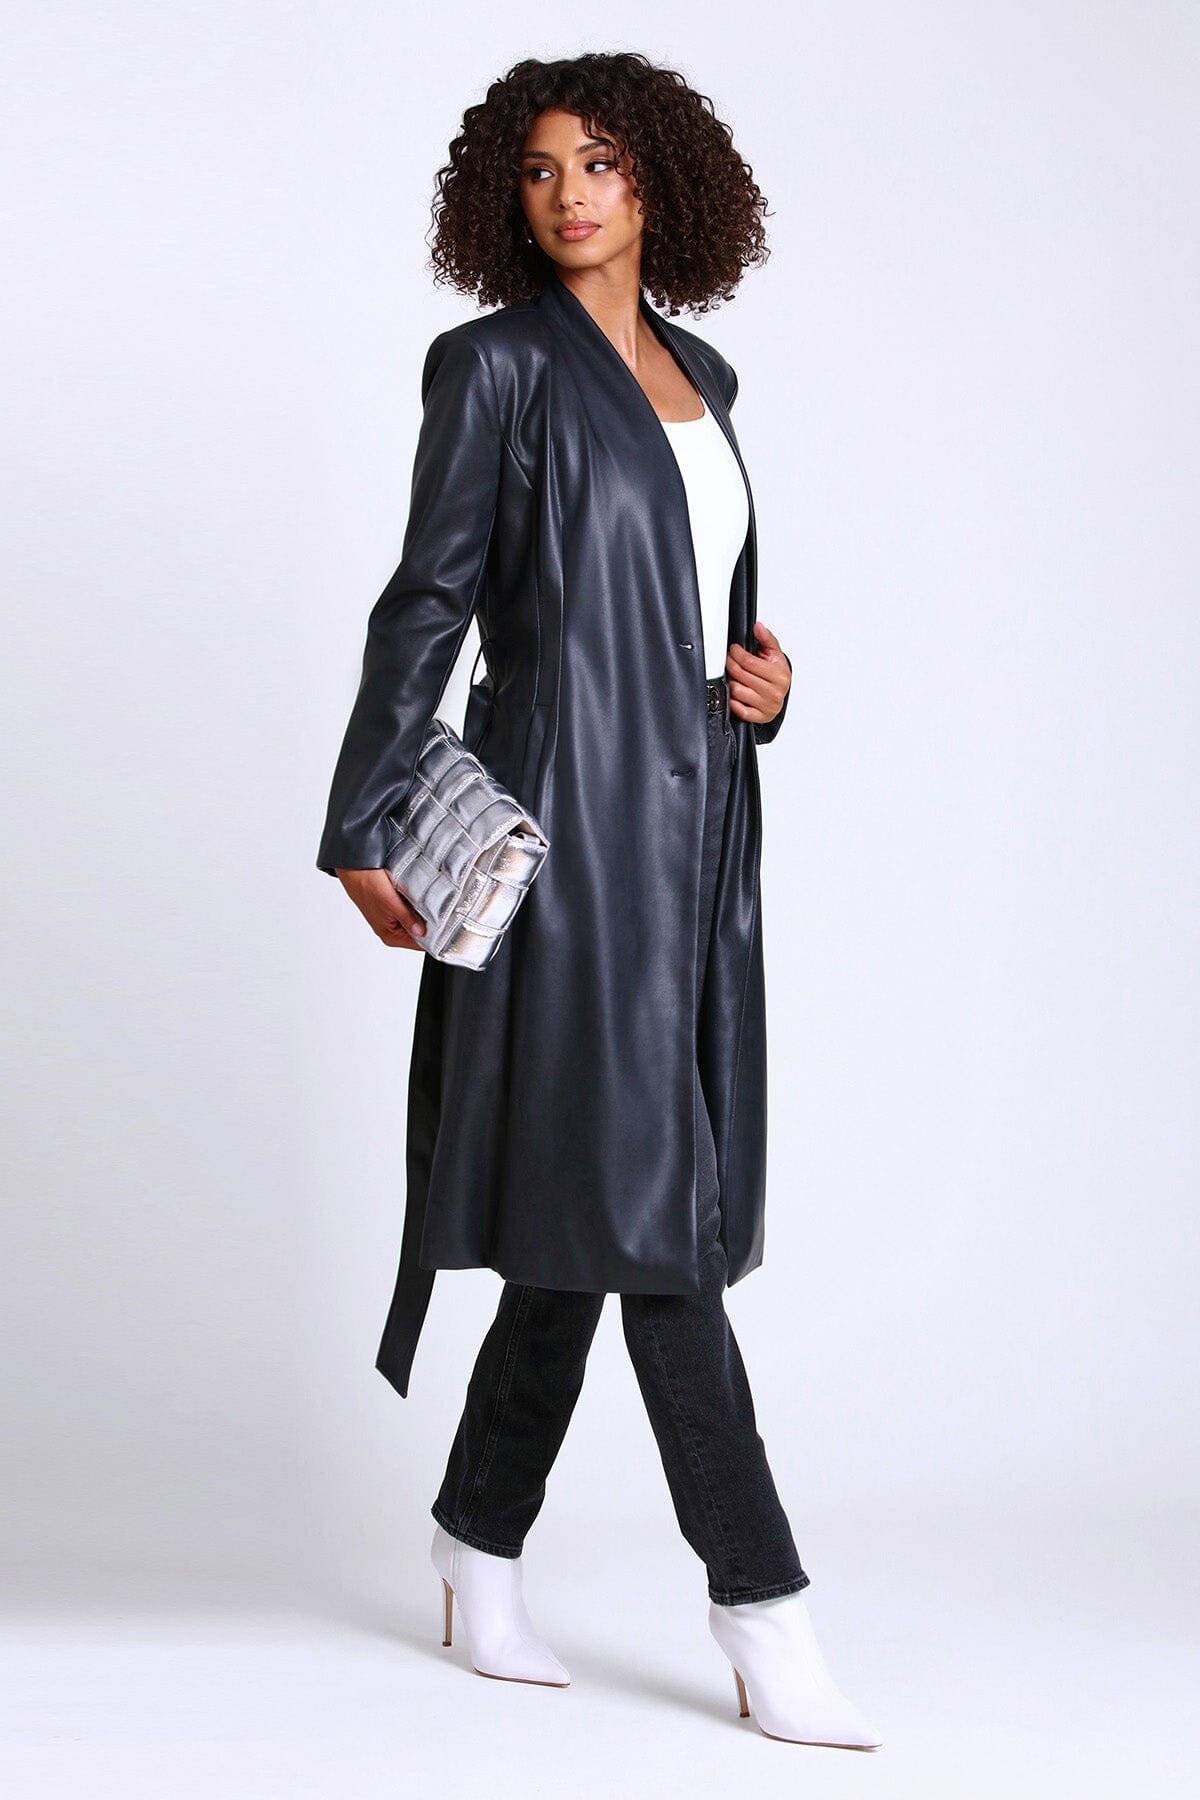 Women's Fashion Trench Coat Jackets - Avec Les Filles